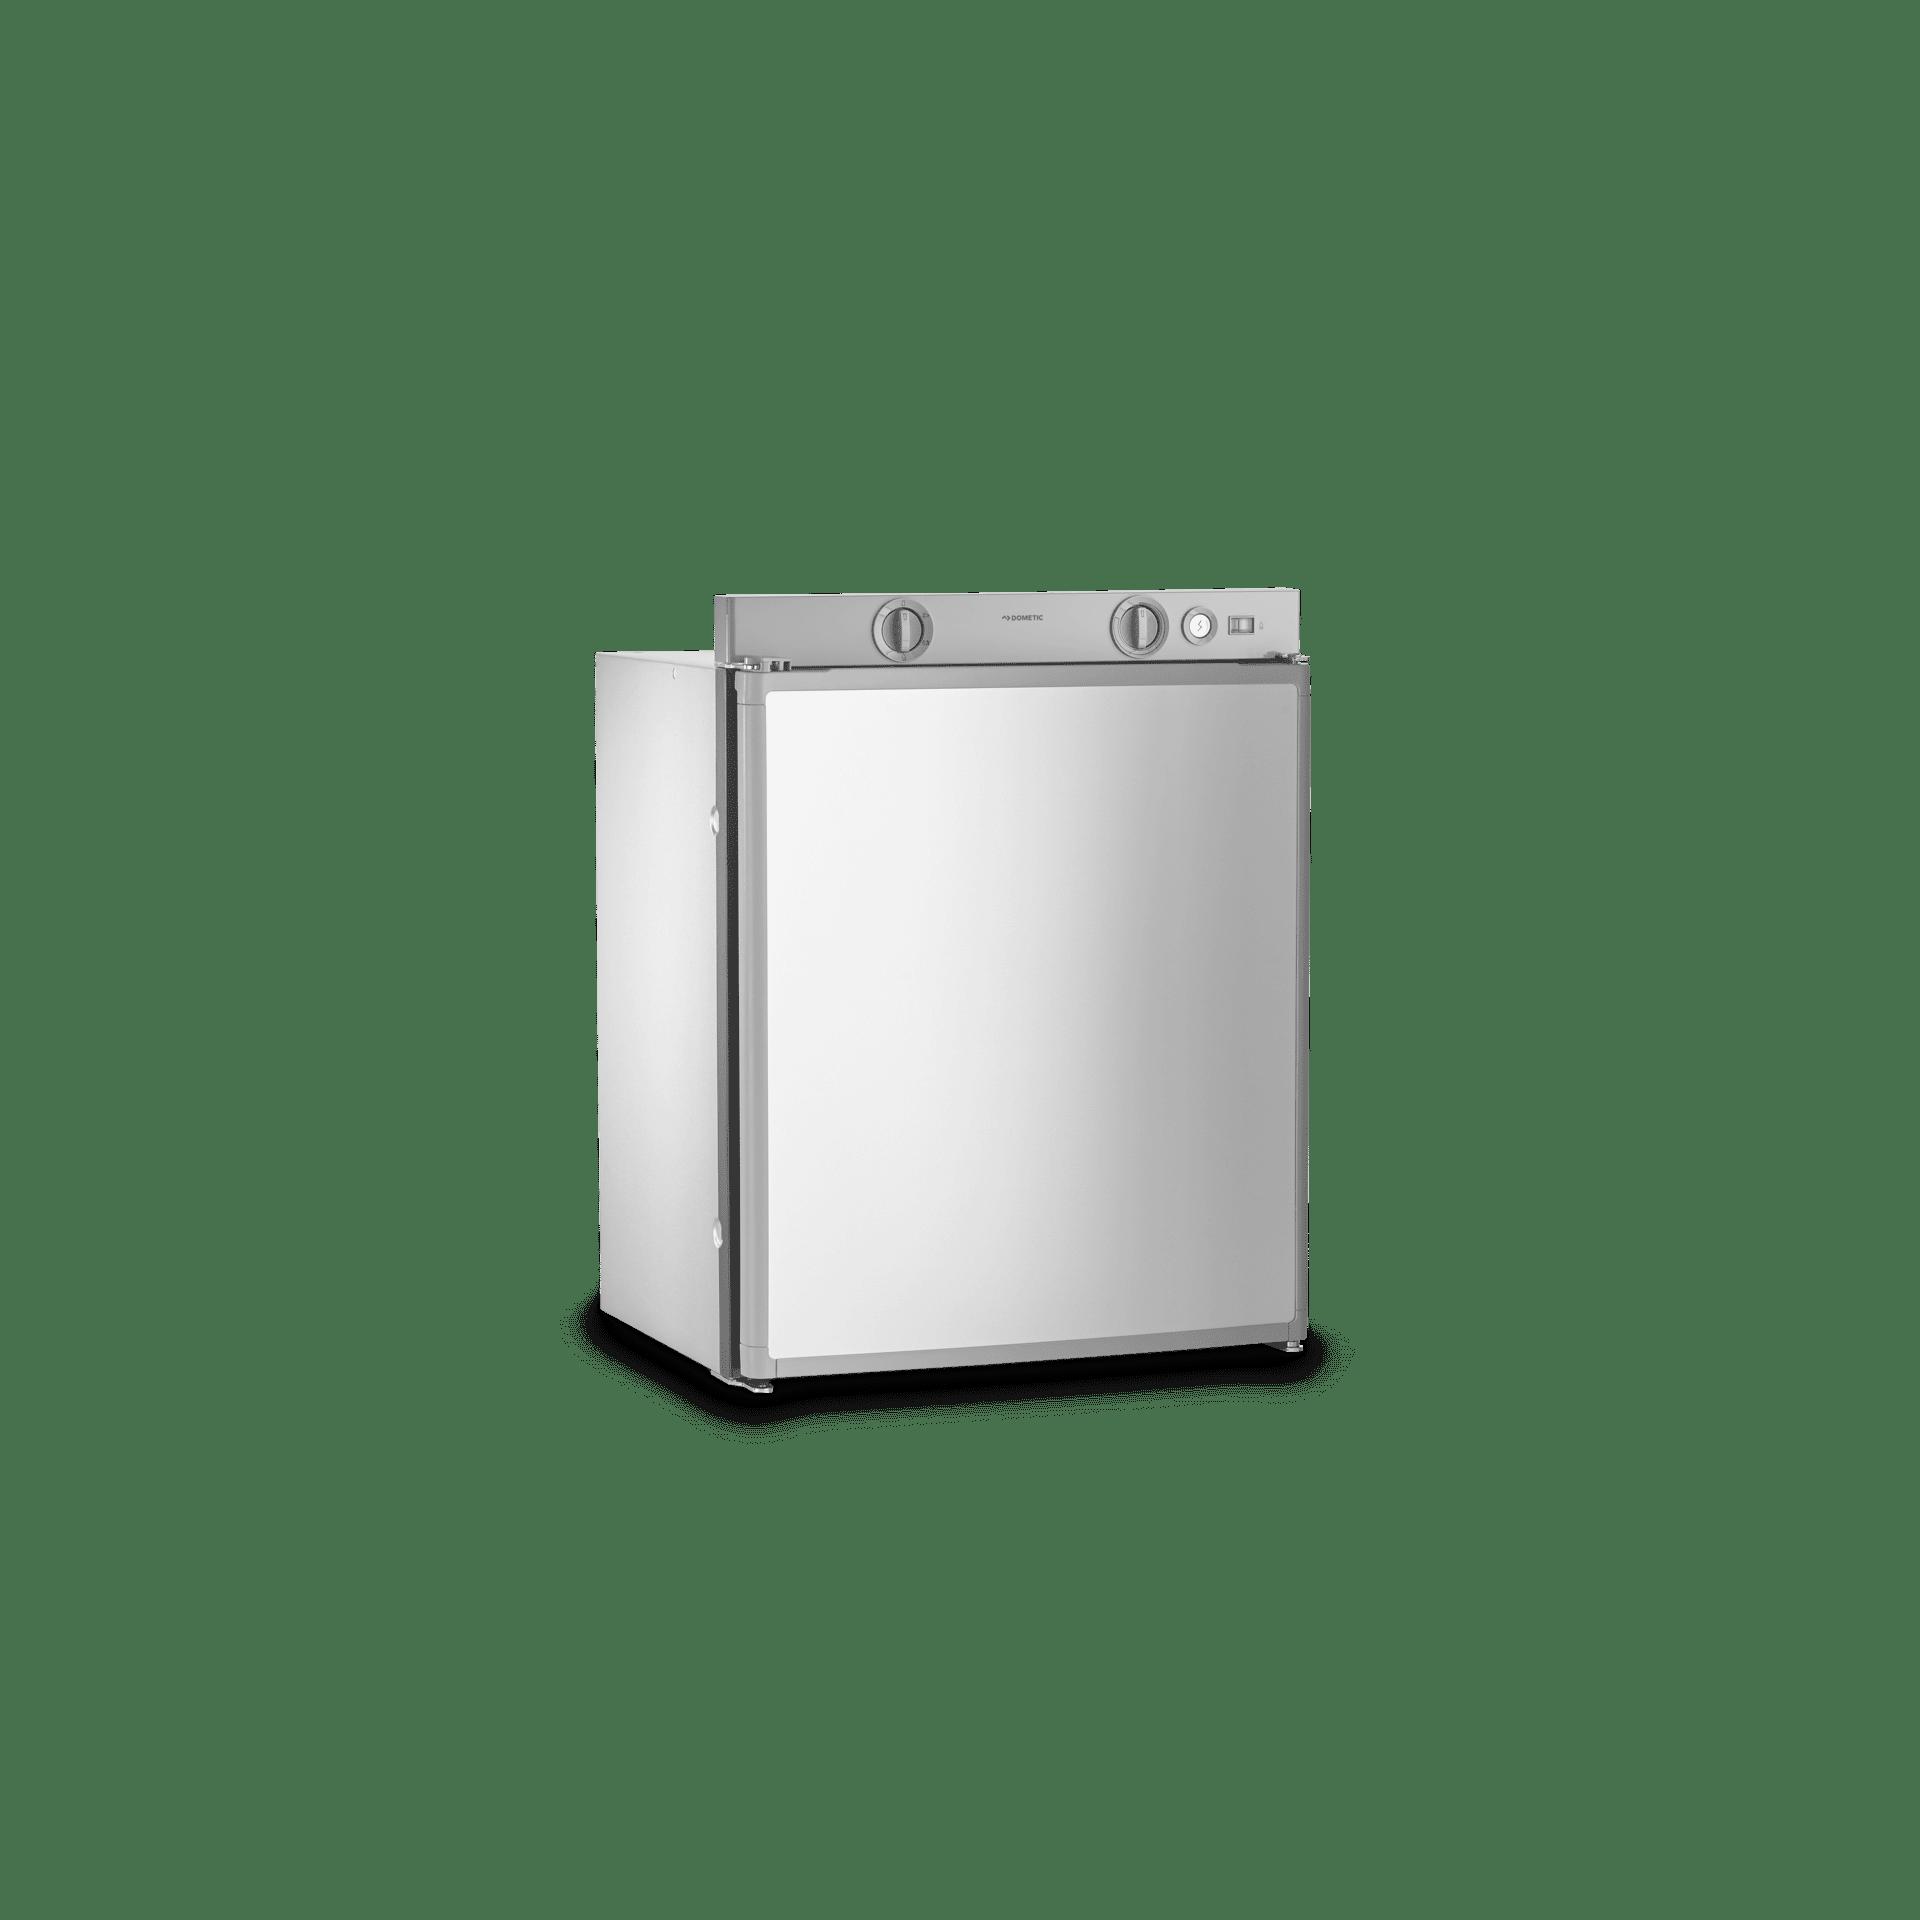 Dometic RM 5310 Absorber-Kühlschrank 48,6cm breit 60 Liter Batteriezündung  grau